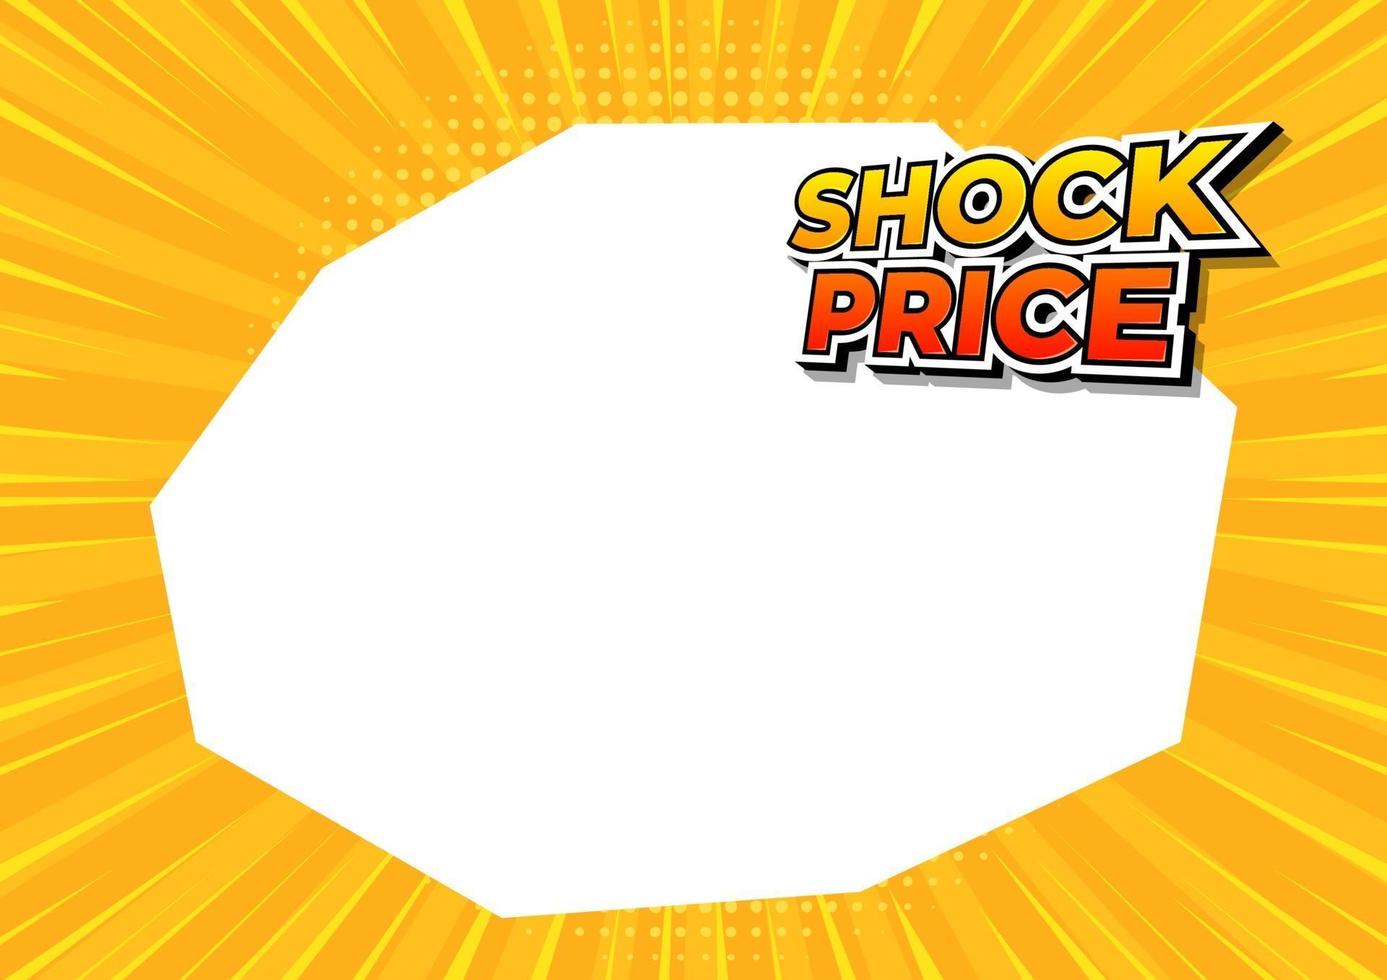 precio de choque en banner de fondo de cómic amarillo. plantilla de diseño de precio de choque. vector